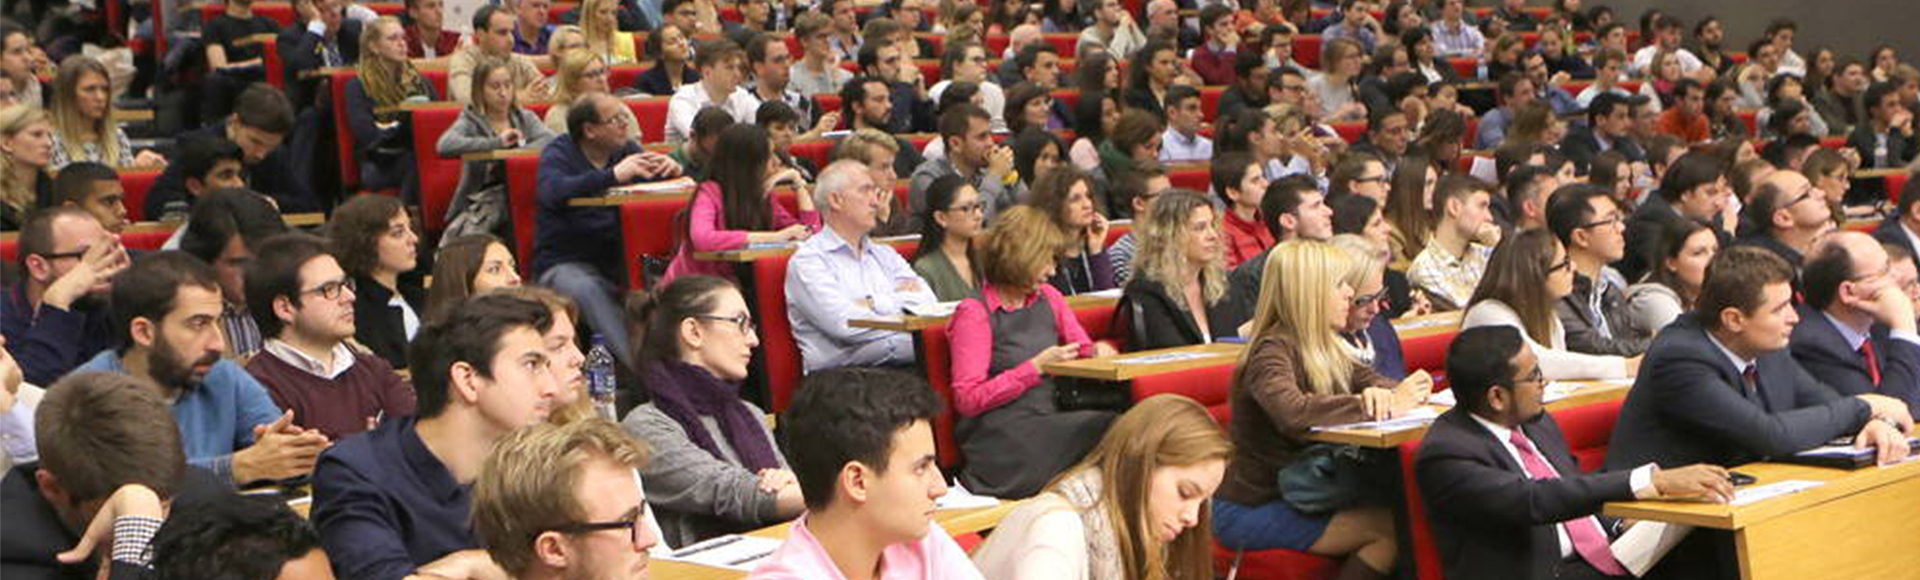 Public lecture audience